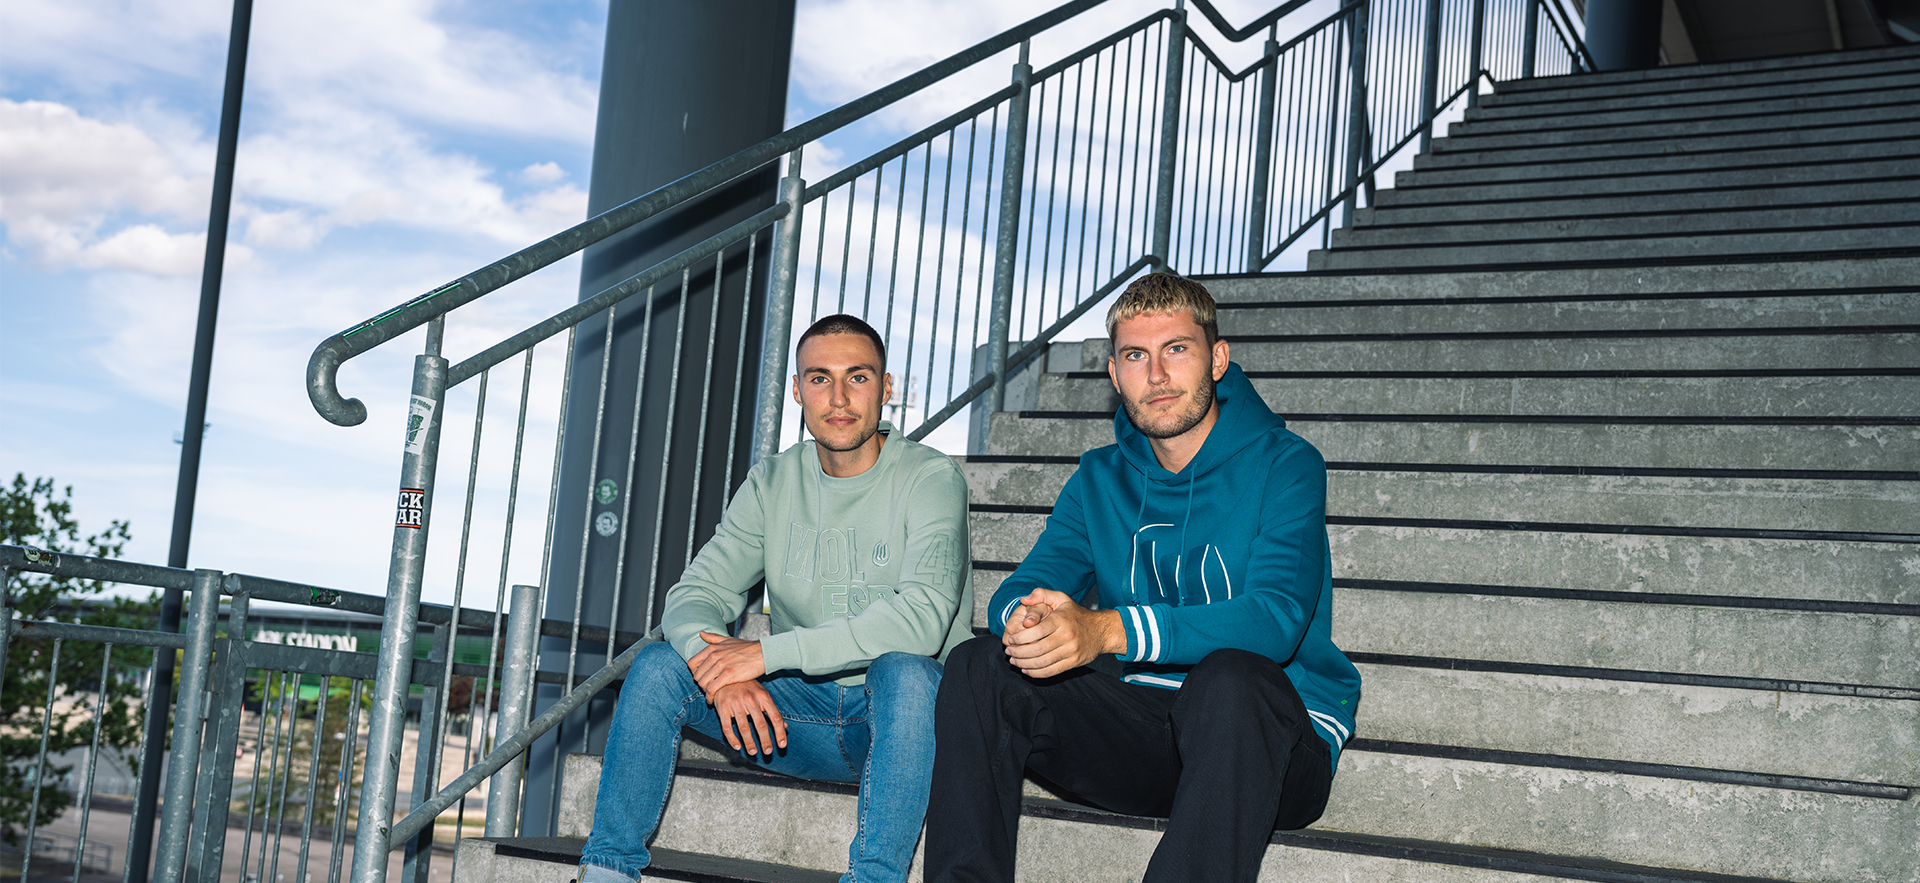 Zwei Spieler sitzen auf der Treppe und tragen VfL-Hoodies.